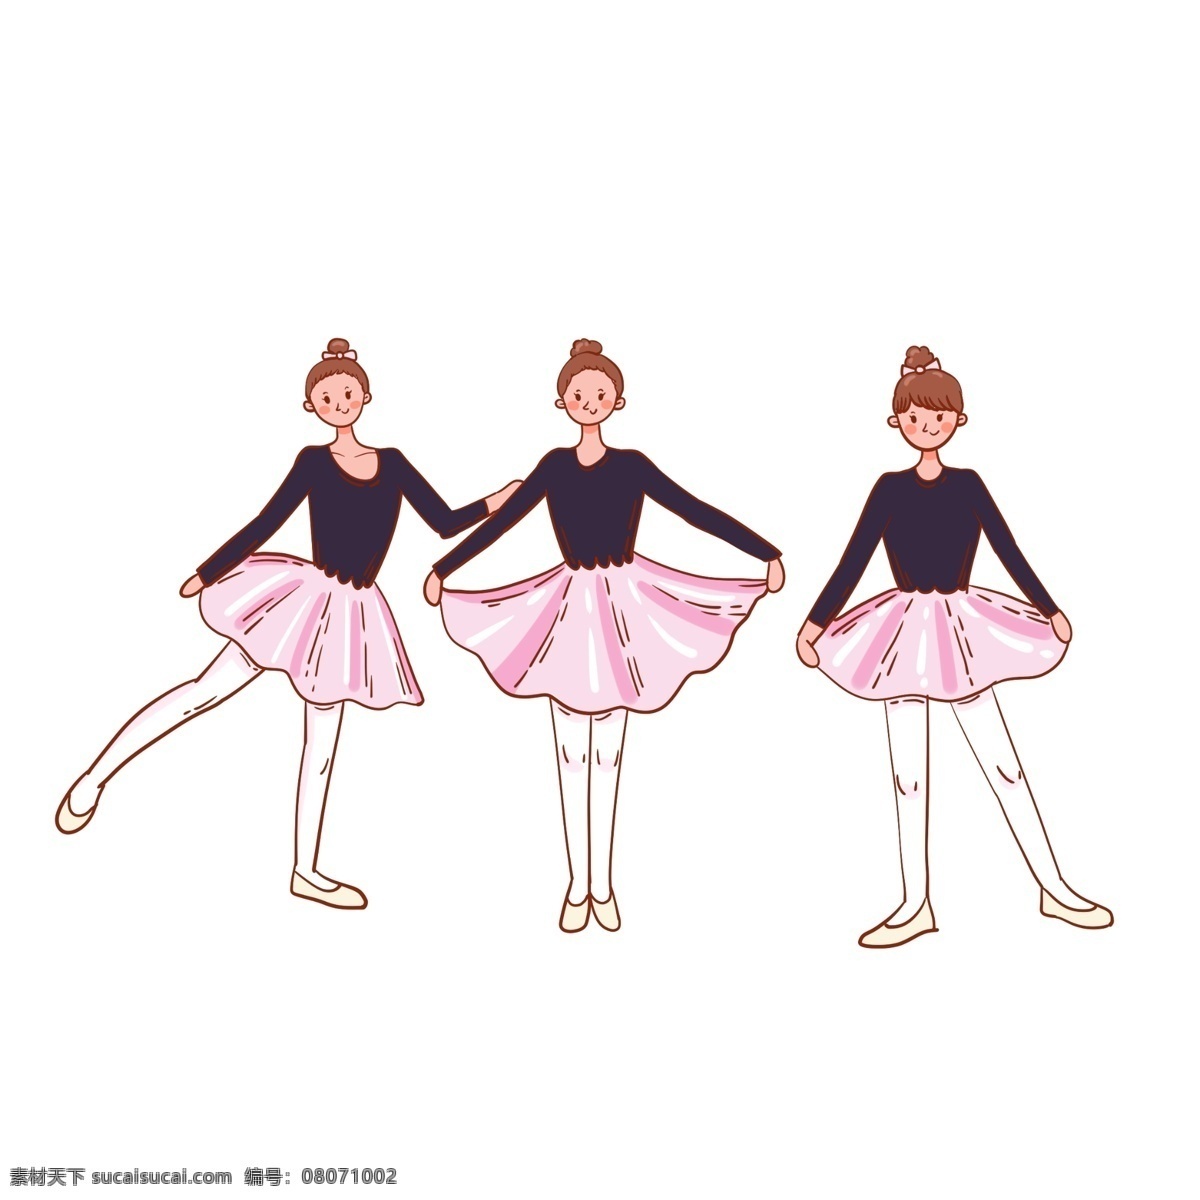 跳舞 人 卡通女孩 裙子 芭蕾舞 舞蹈 灵感 设计素材 收集